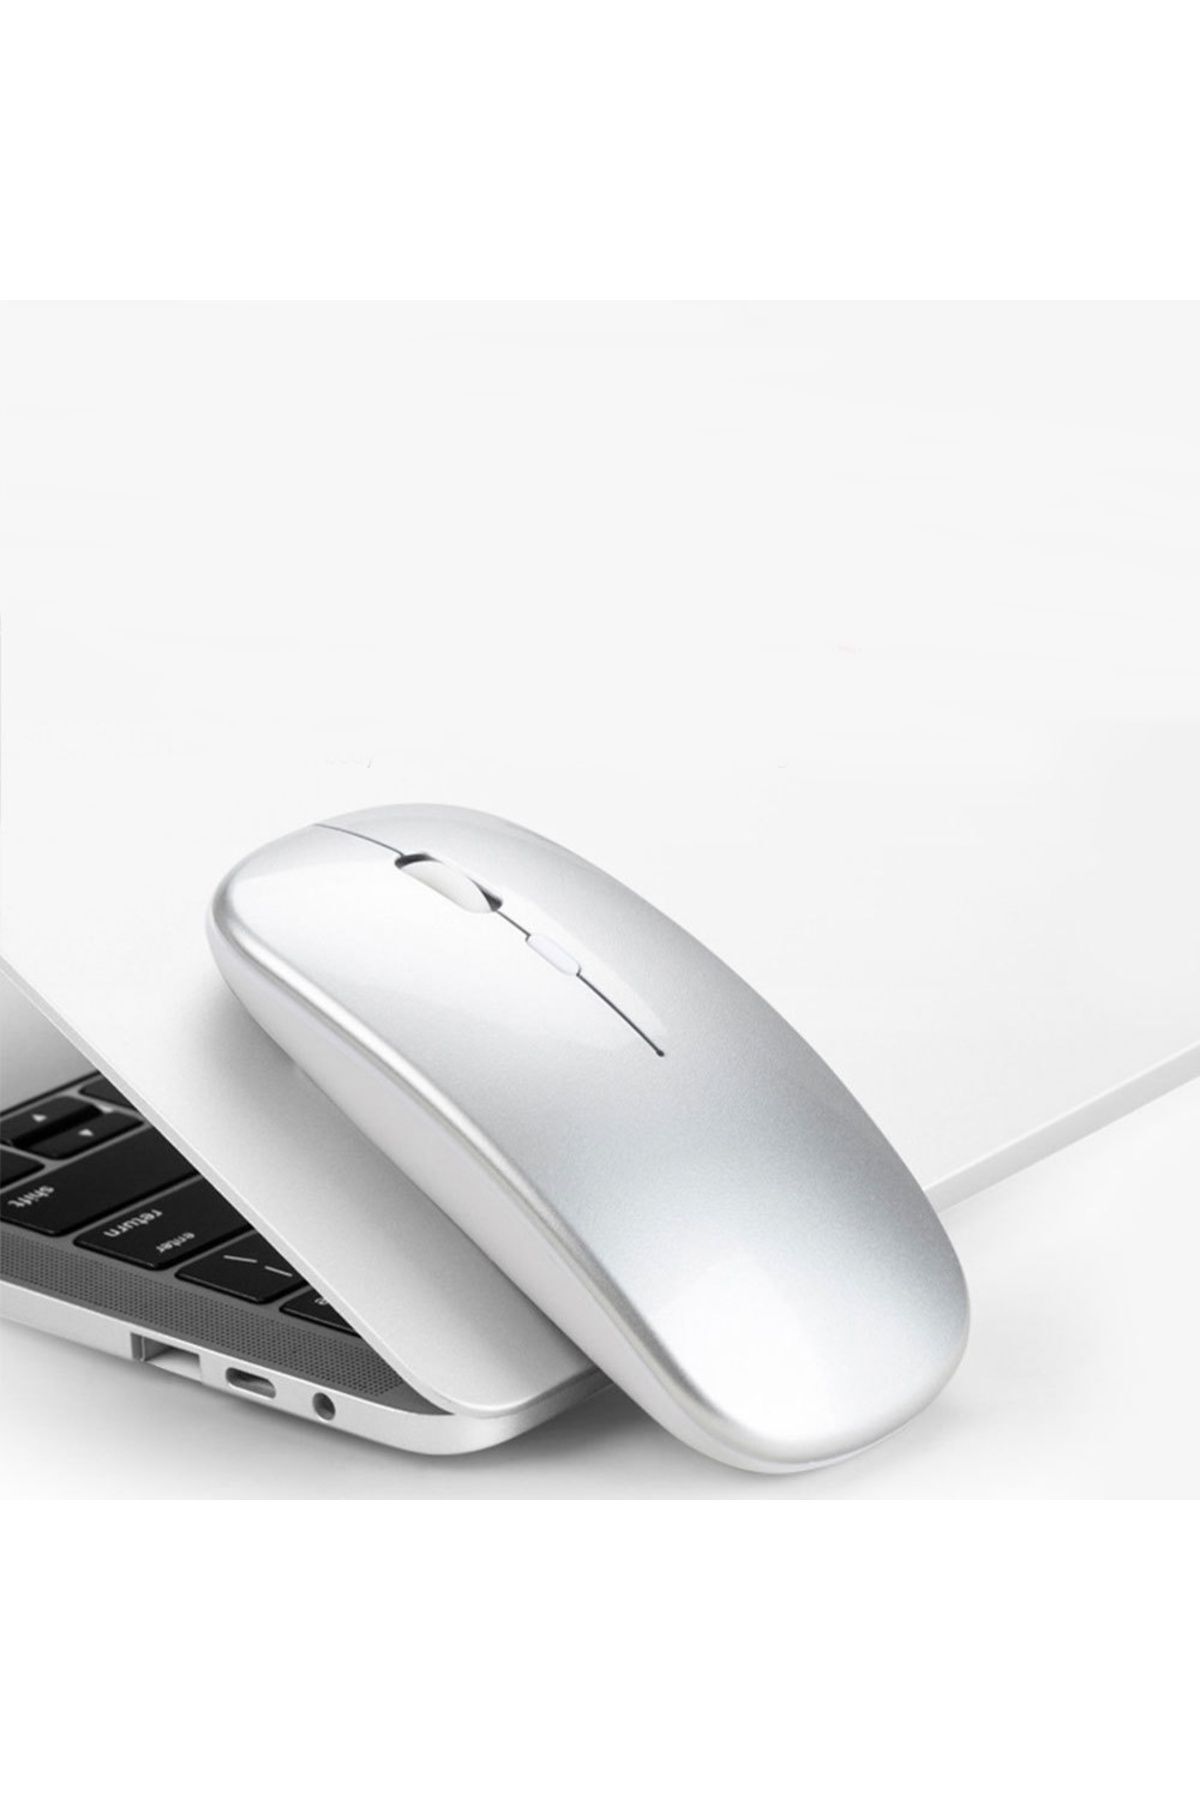 Reidan Pilli Beyaz Mouse fare kablosuz laptop bilgisayar mouse faresi Rgb led usb alıcılı